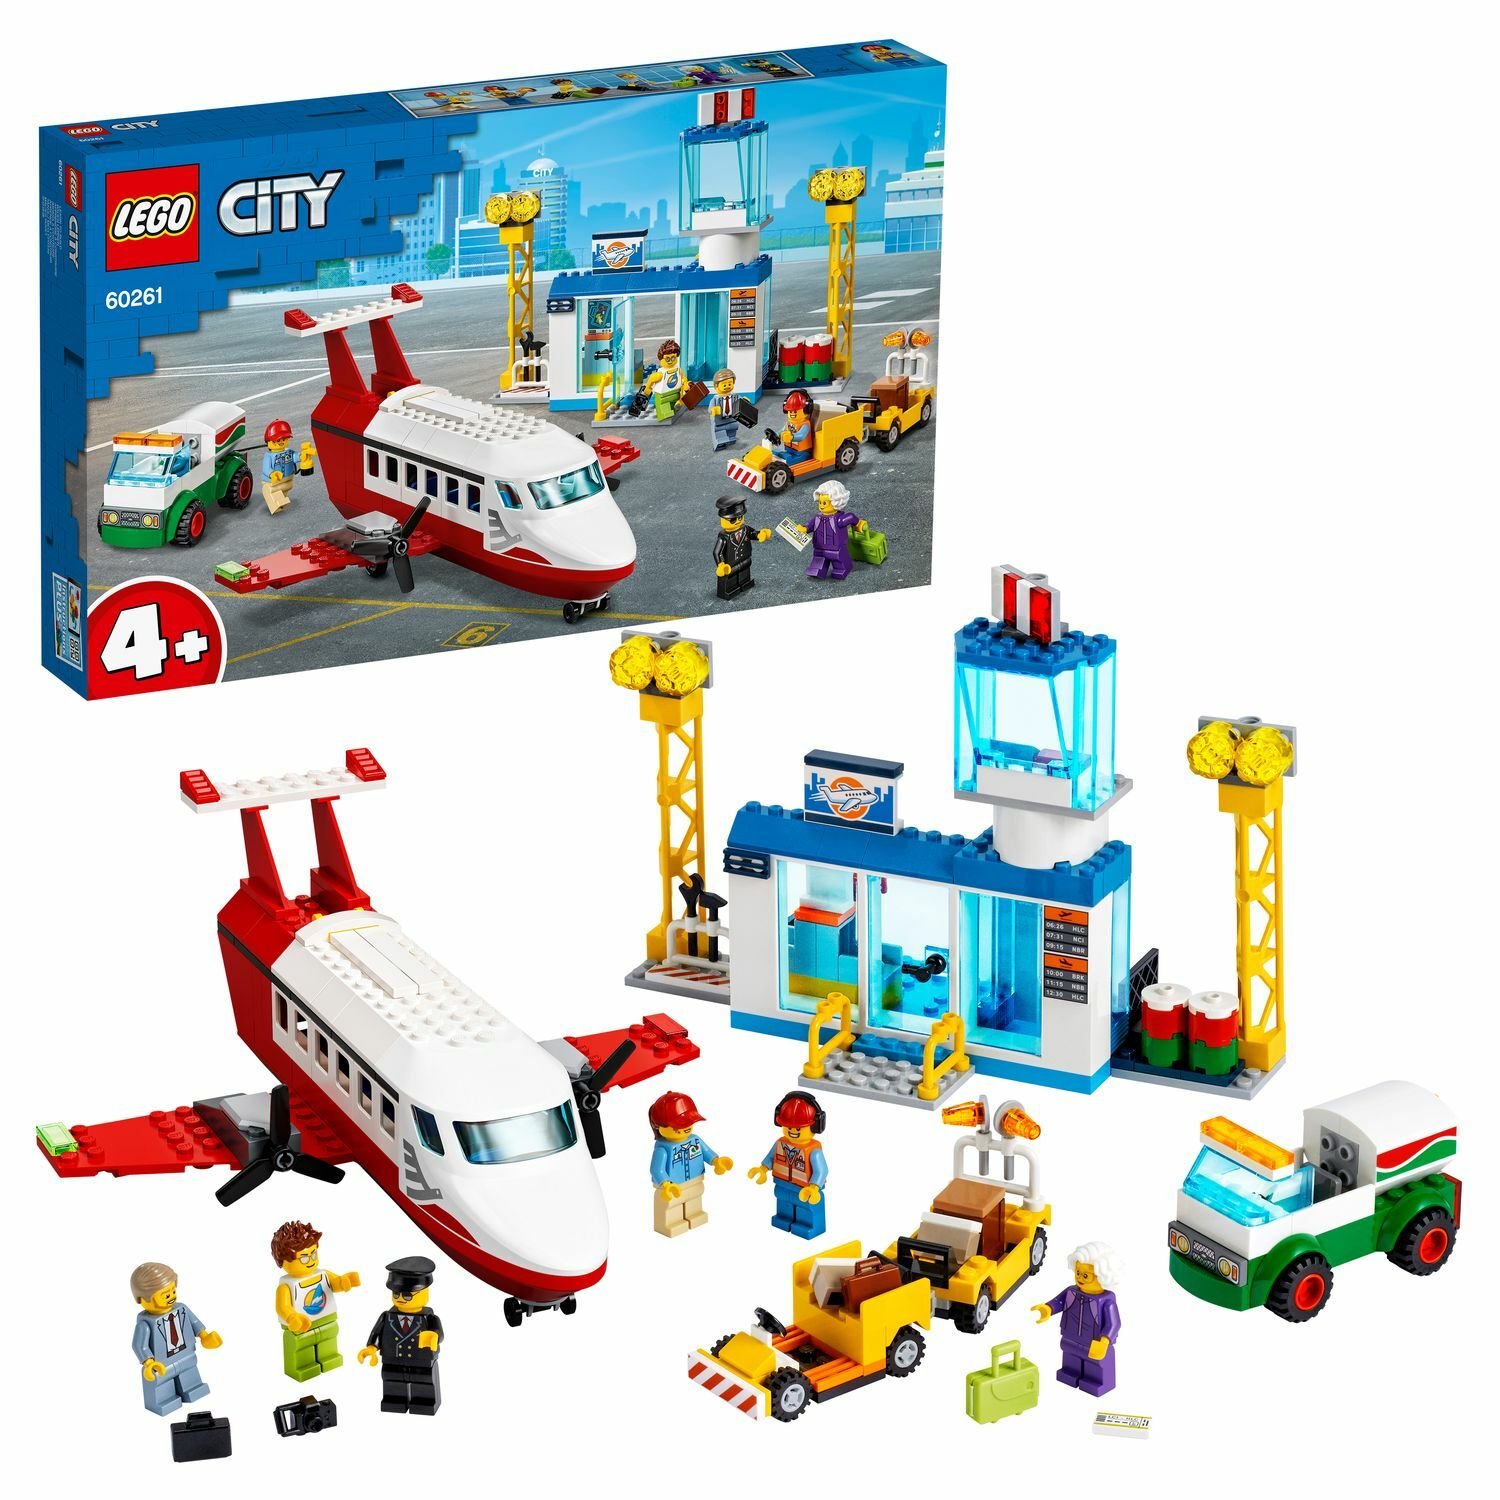 LEGO City 60261 Airport Городской аэропорт - Уральск 